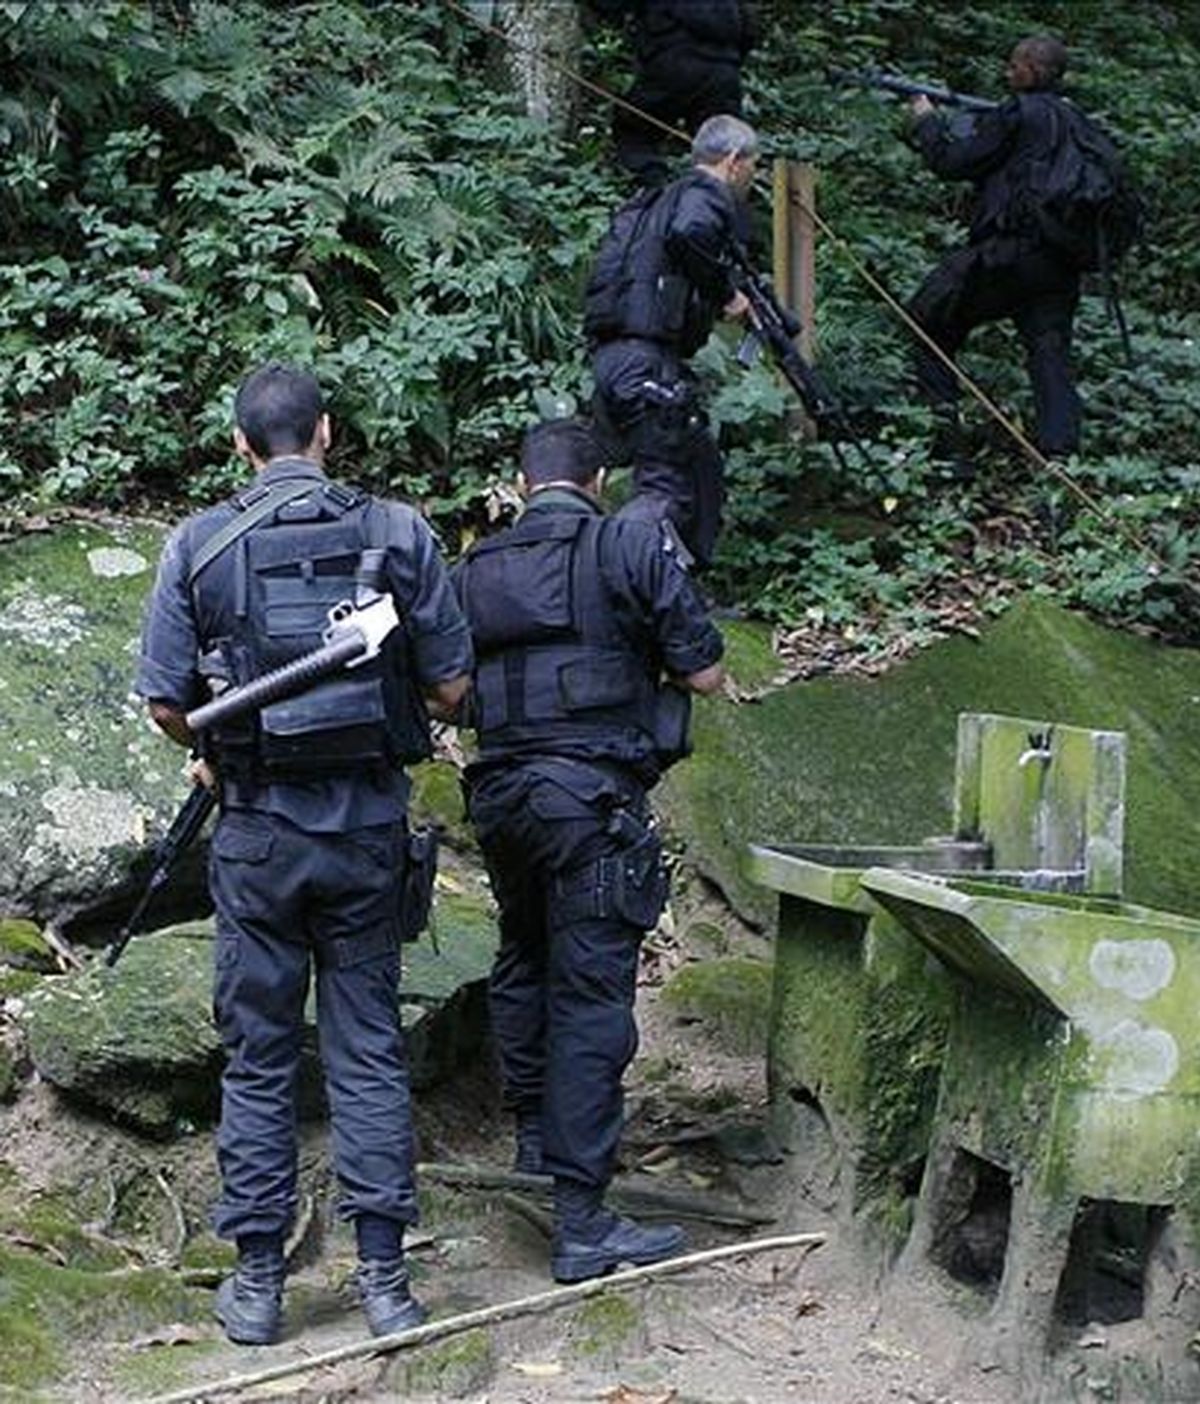 Seis supuestos narcotraficantes murieron y otro quedó herido en el cruce de disparos con agentes del Primer Batallón de la institución en el populoso barrio de Santa Teresa, Río de Janeiro (Brasil). EFE/Archivo